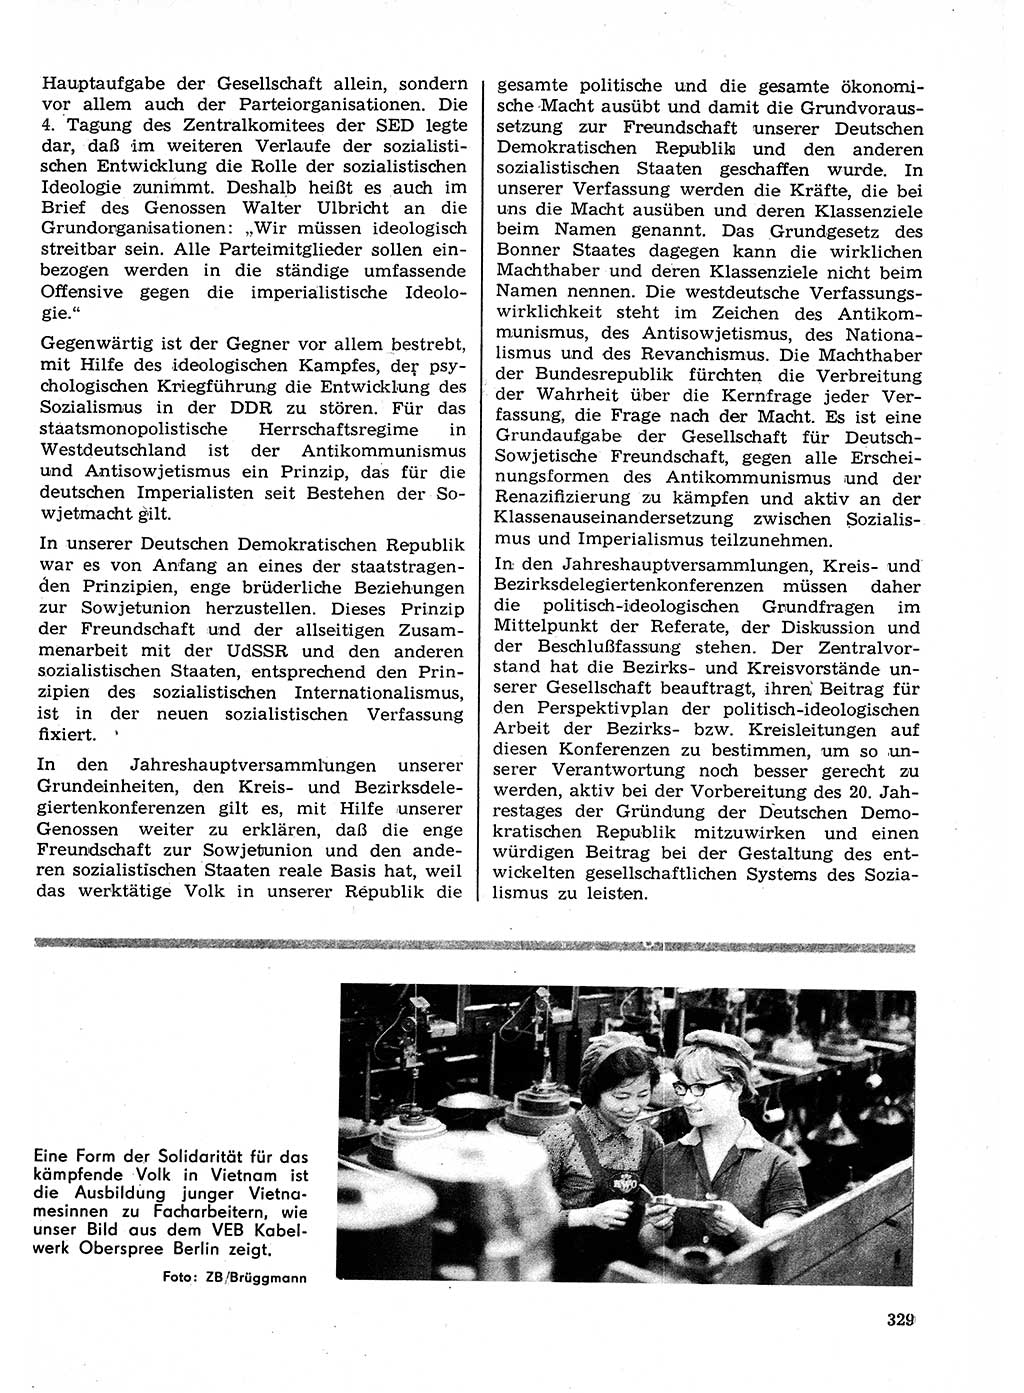 Neuer Weg (NW), Organ des Zentralkomitees (ZK) der SED (Sozialistische Einheitspartei Deutschlands) für Fragen des Parteilebens, 23. Jahrgang [Deutsche Demokratische Republik (DDR)] 1968, Seite 329 (NW ZK SED DDR 1968, S. 329)